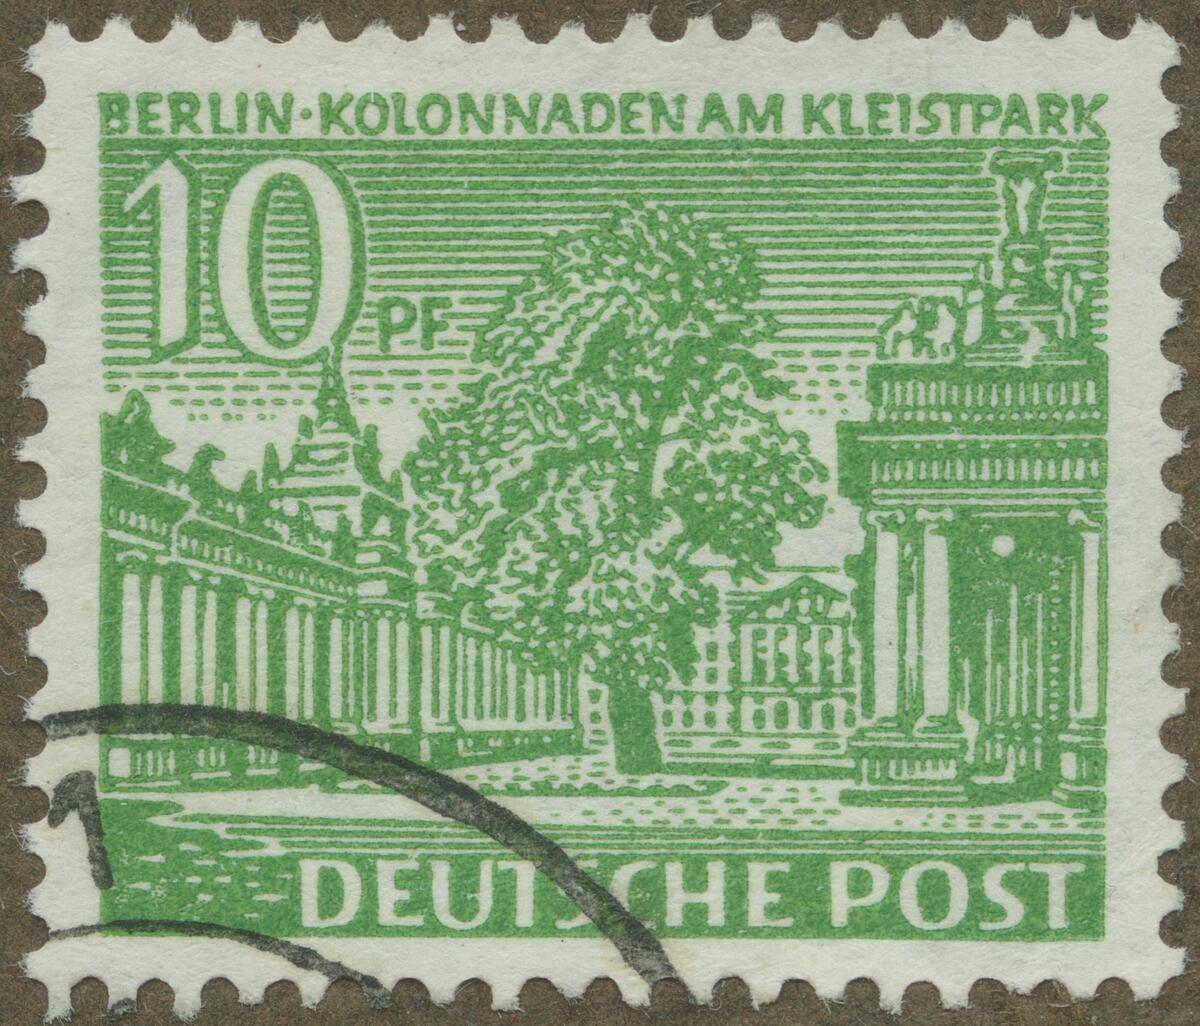 Frimärke ur Gösta Bodmans filatelistiska motivsamling, påbörjad 1950.
Frimärke från Väst Tyskland, 1949. Motiv av Kolonnaderna vid Kleist Park